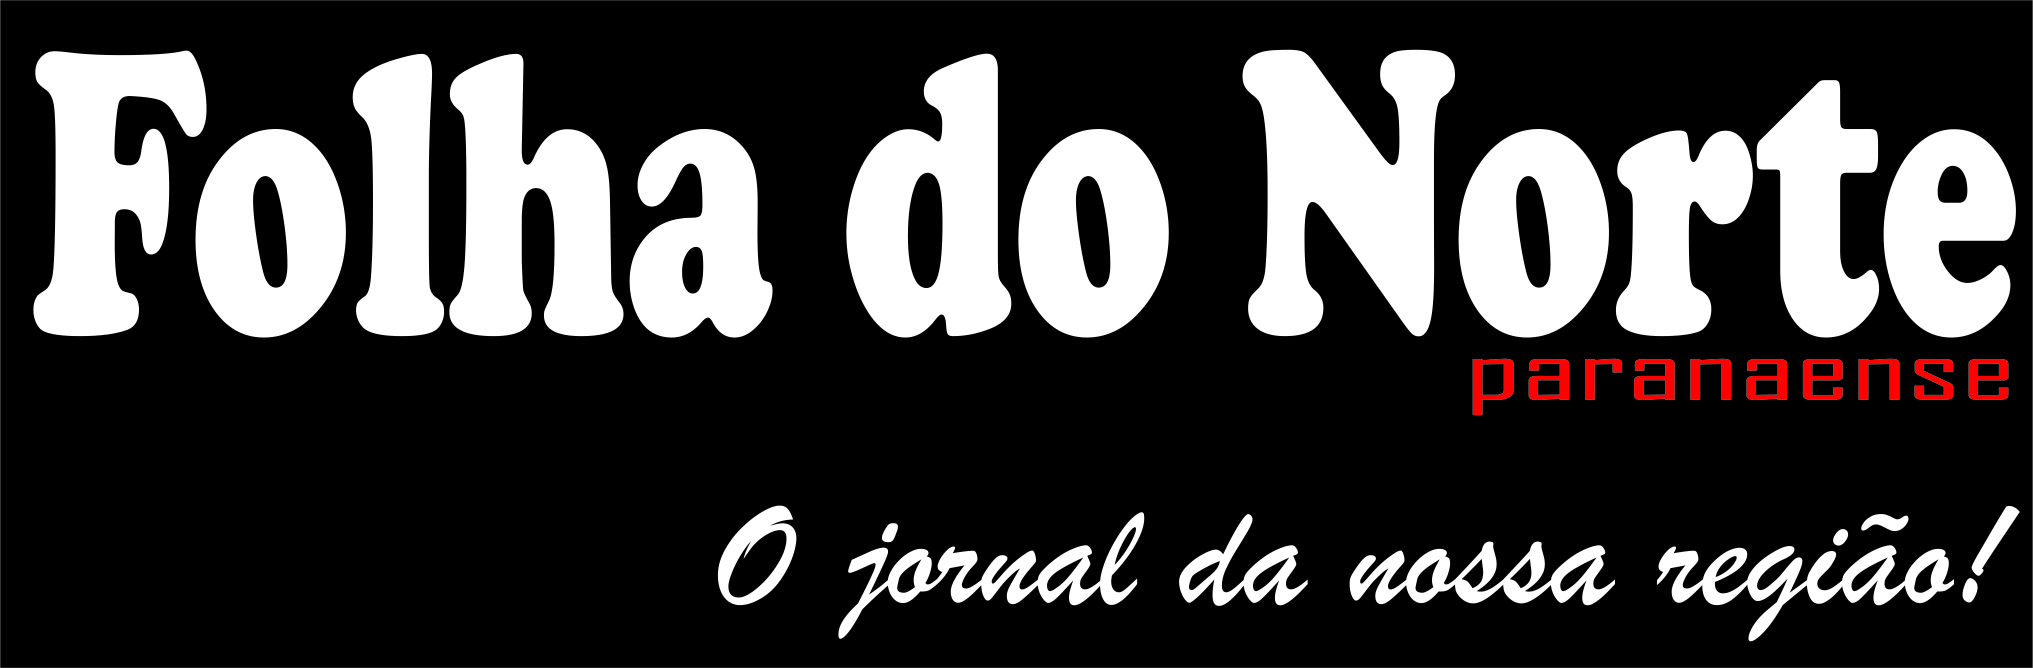 Logo - Folha do Norte Paranaense